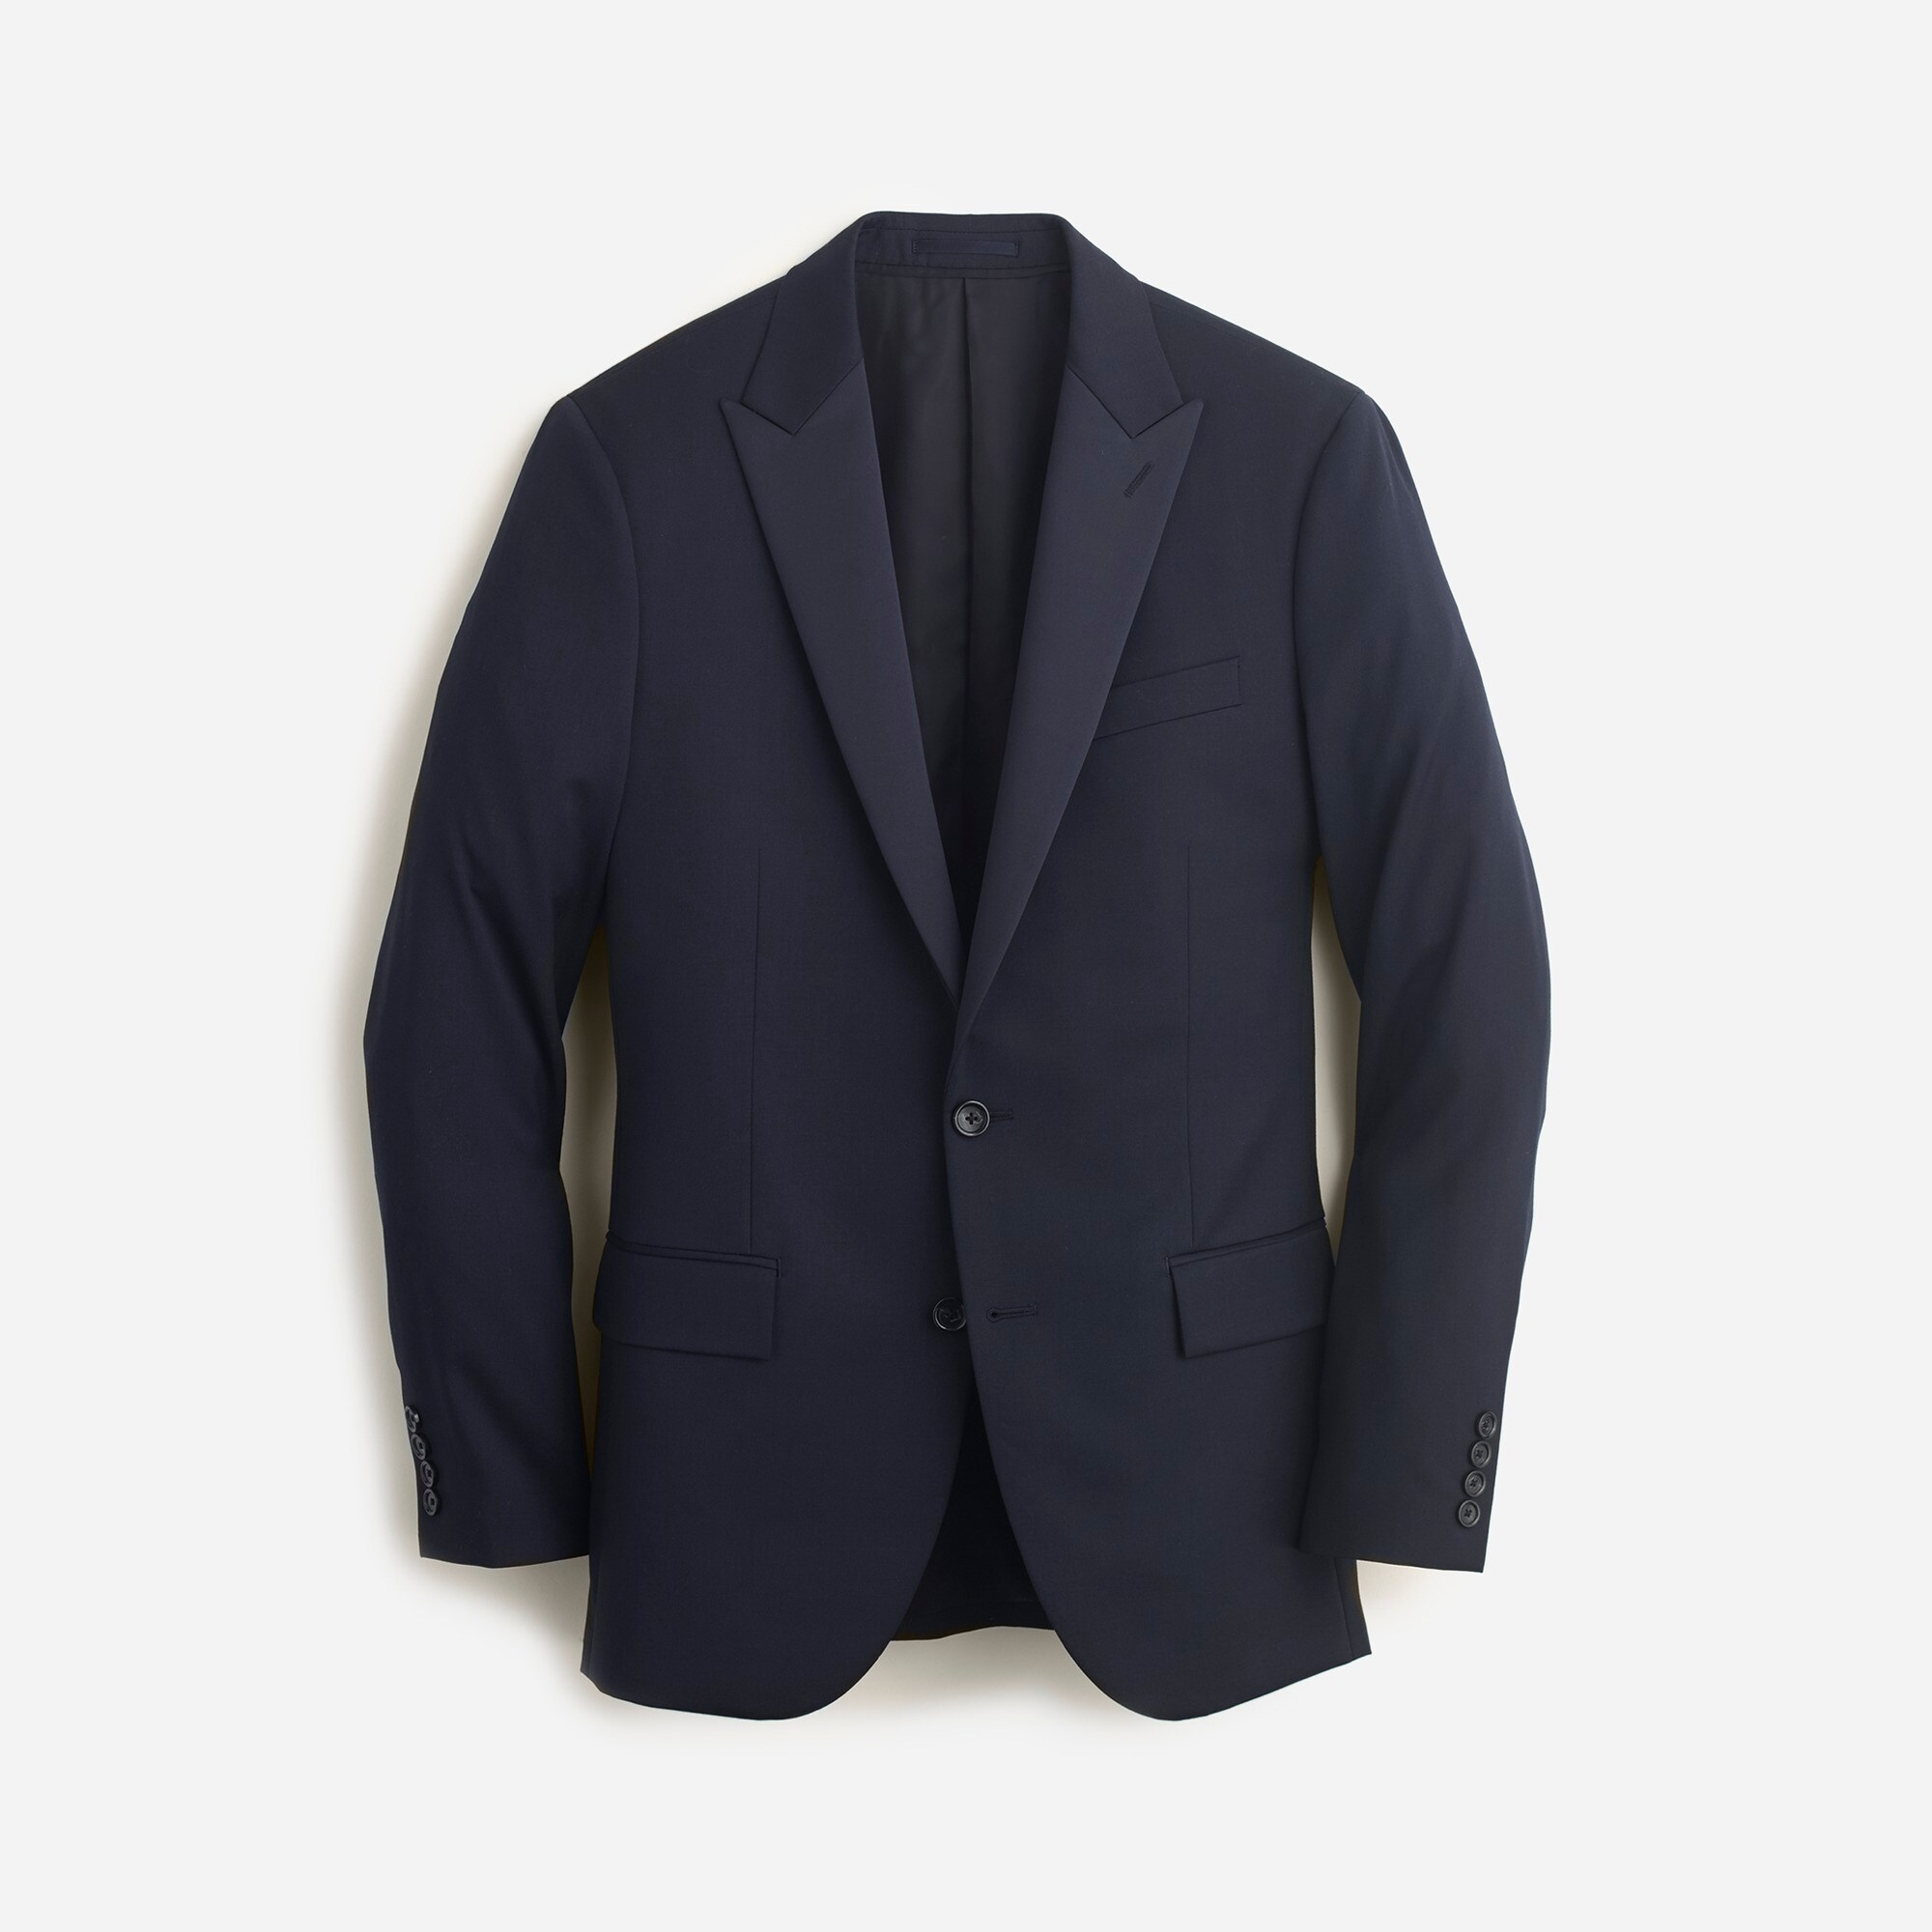  Ludlow Slim-fit tuxedo jacket in Italian wool